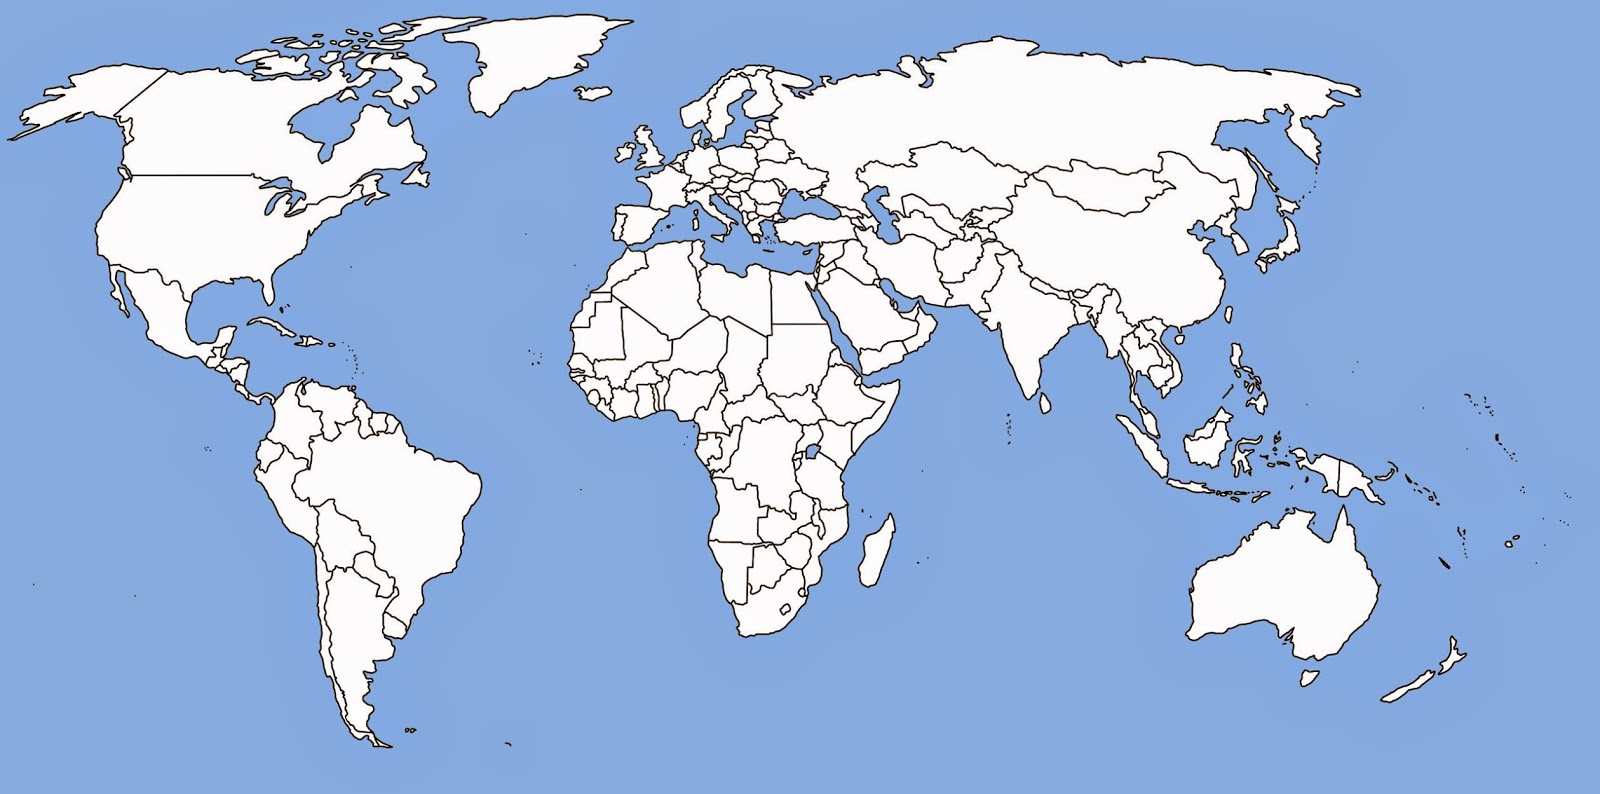 خريطة العالم صماء , اجمل الصور لخريطة العالم الصماء - بنات كول